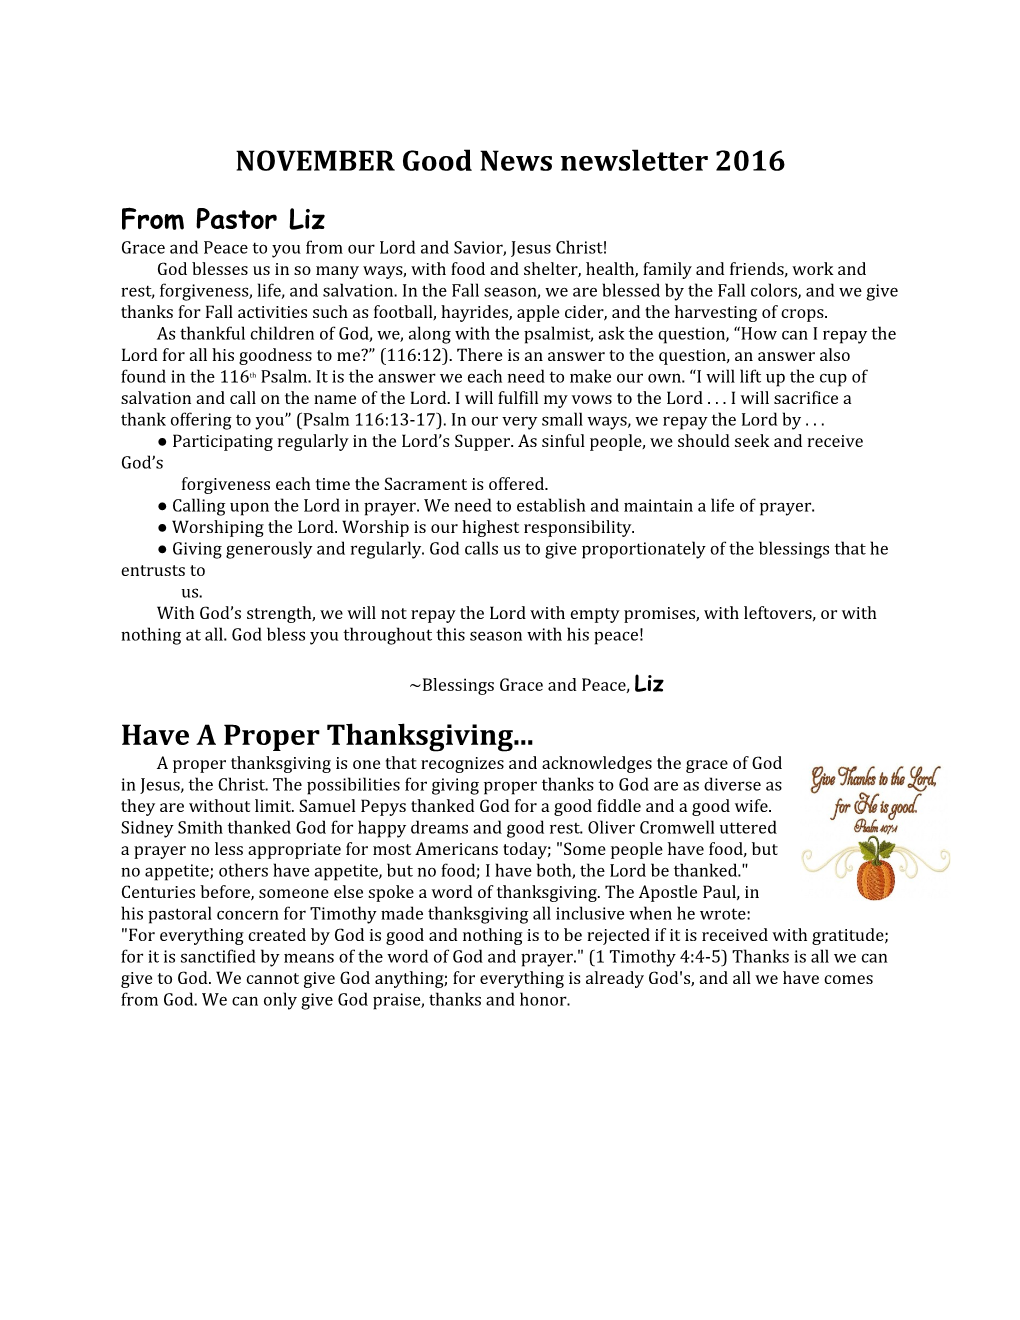 NOVEMBER Good News Newsletter 2016